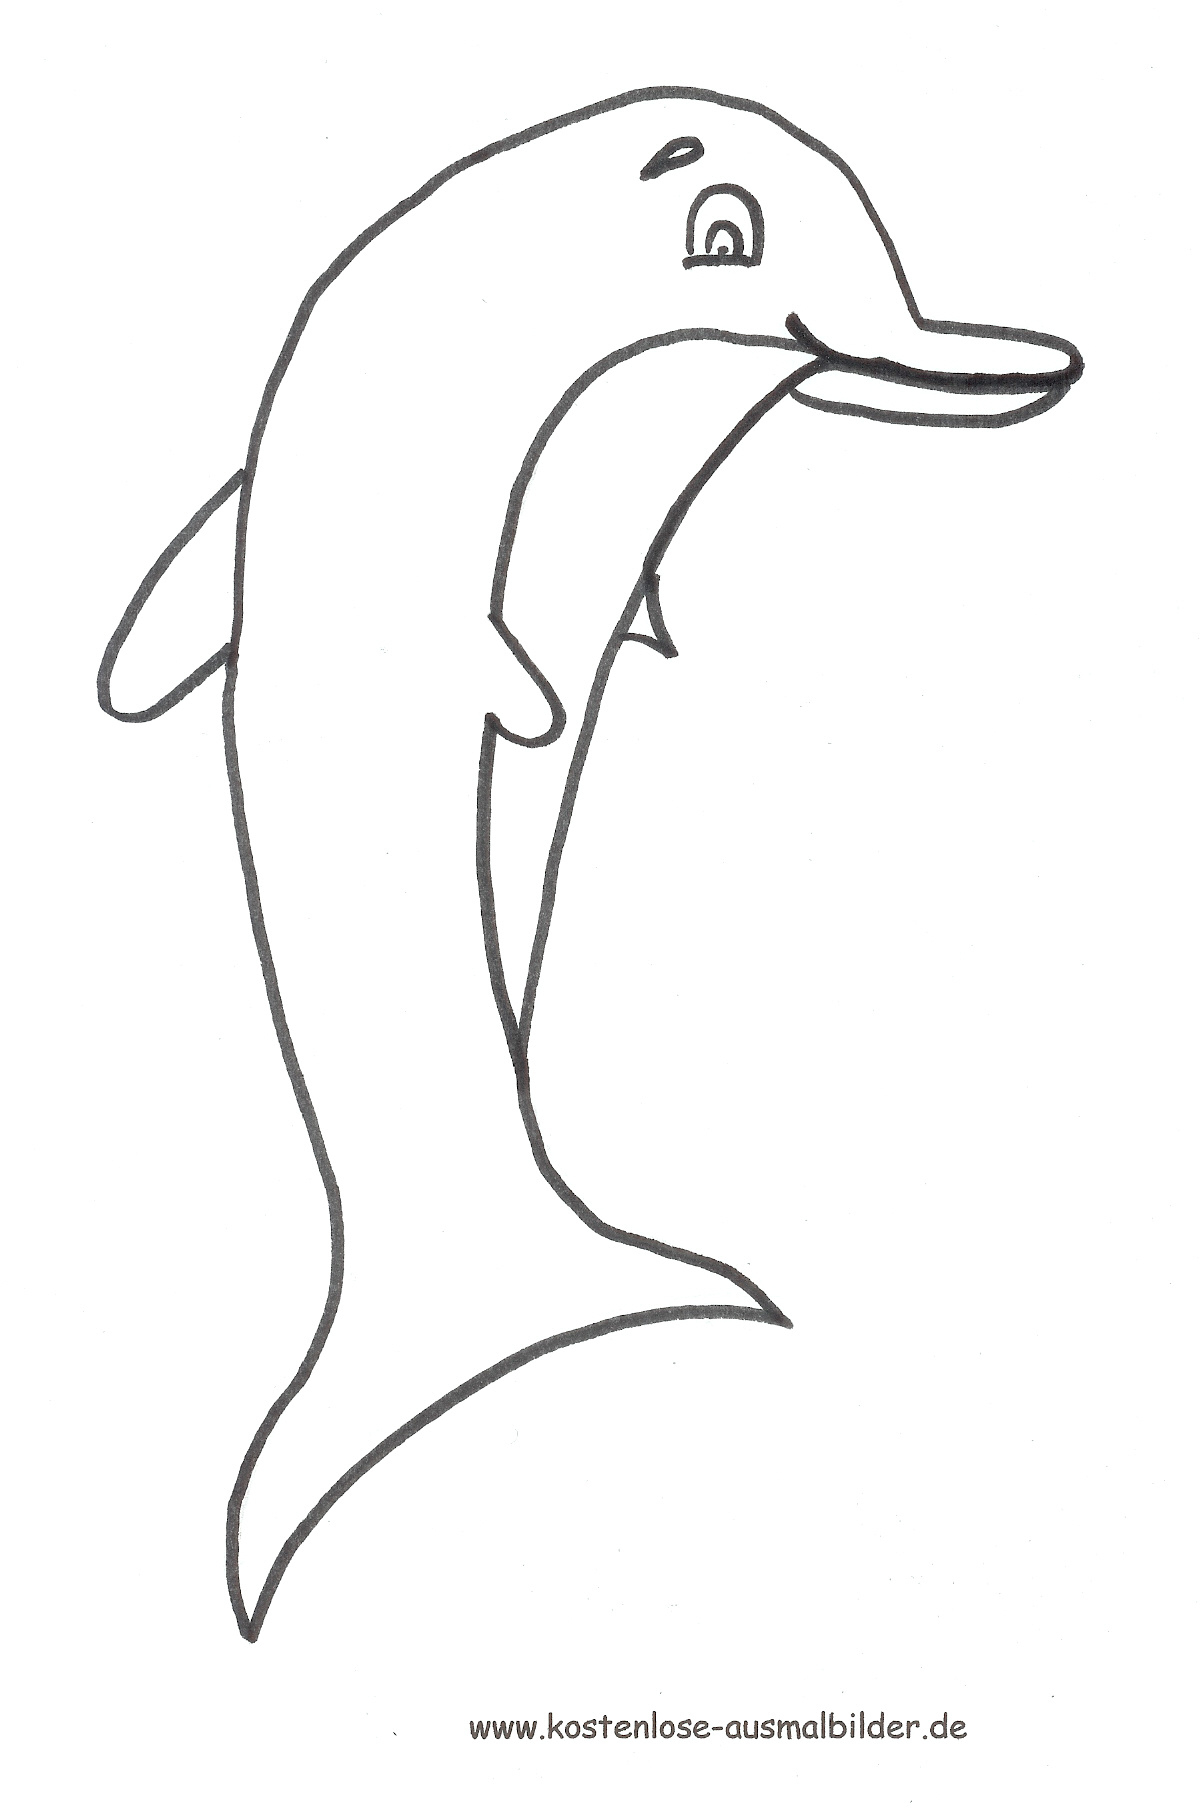 Ausmalbild Delfin Zum Ausdrucken ganzes Ausmalbild Delfin